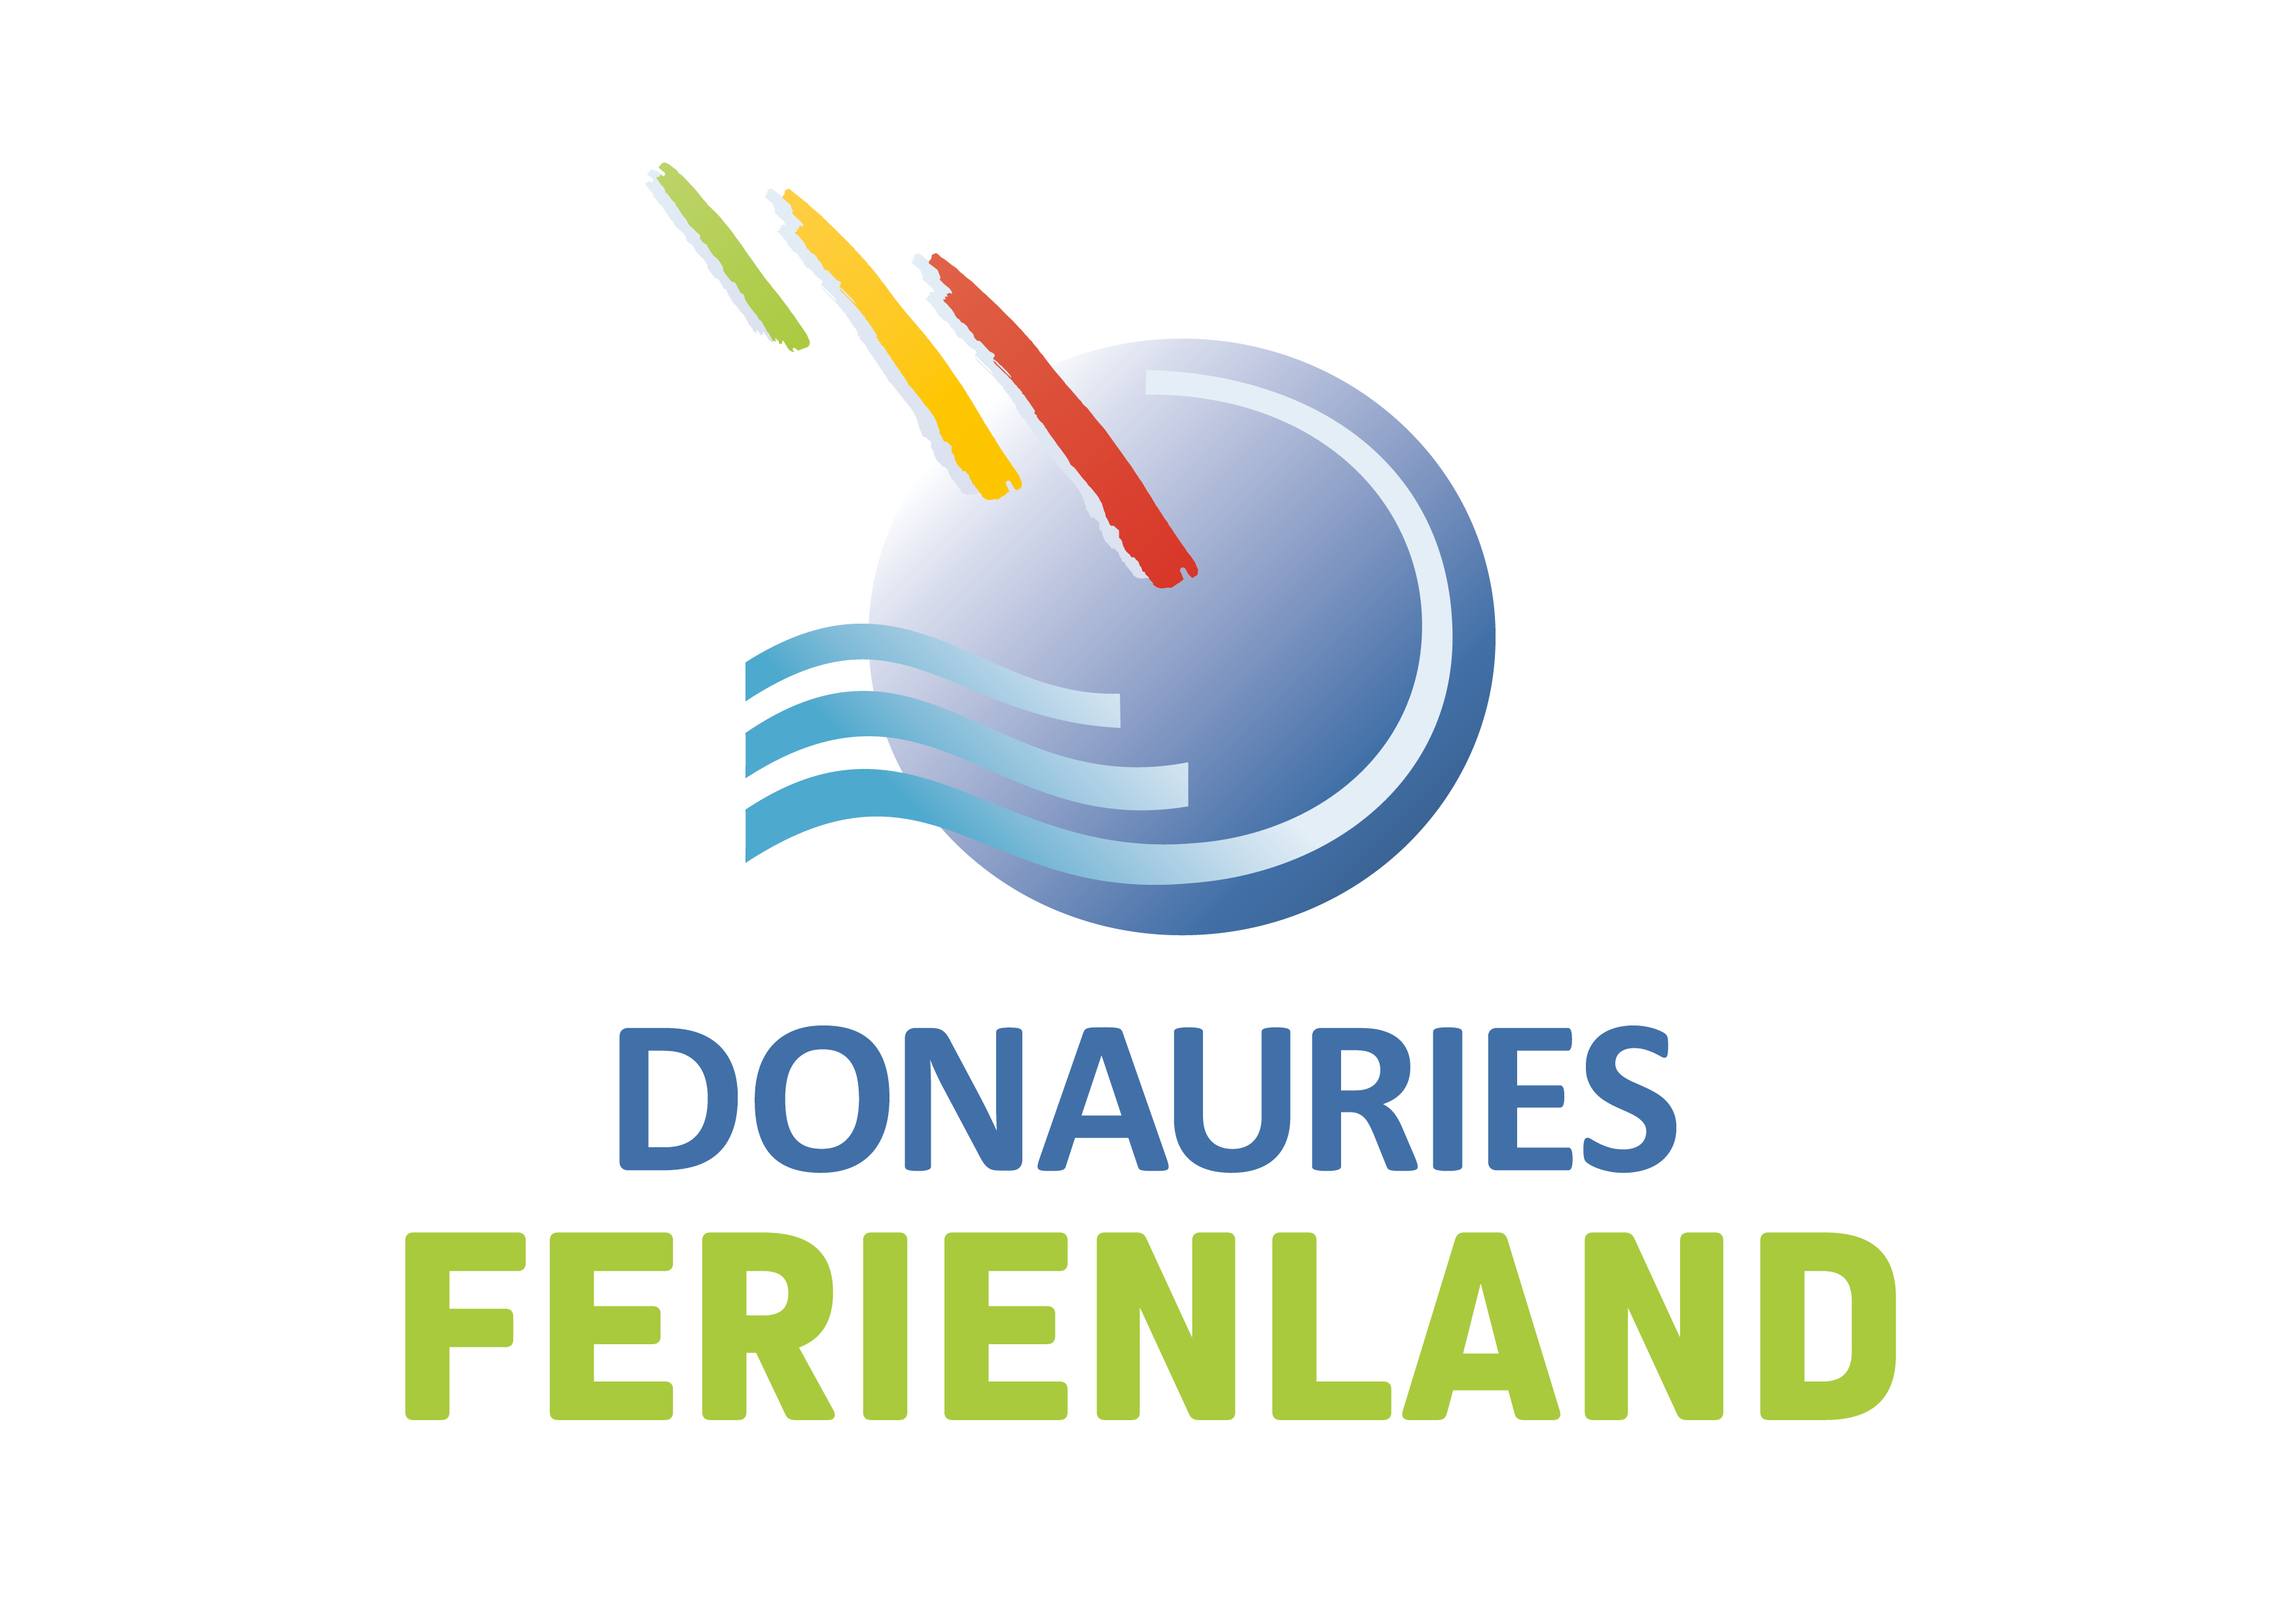 Ferienland Donauries